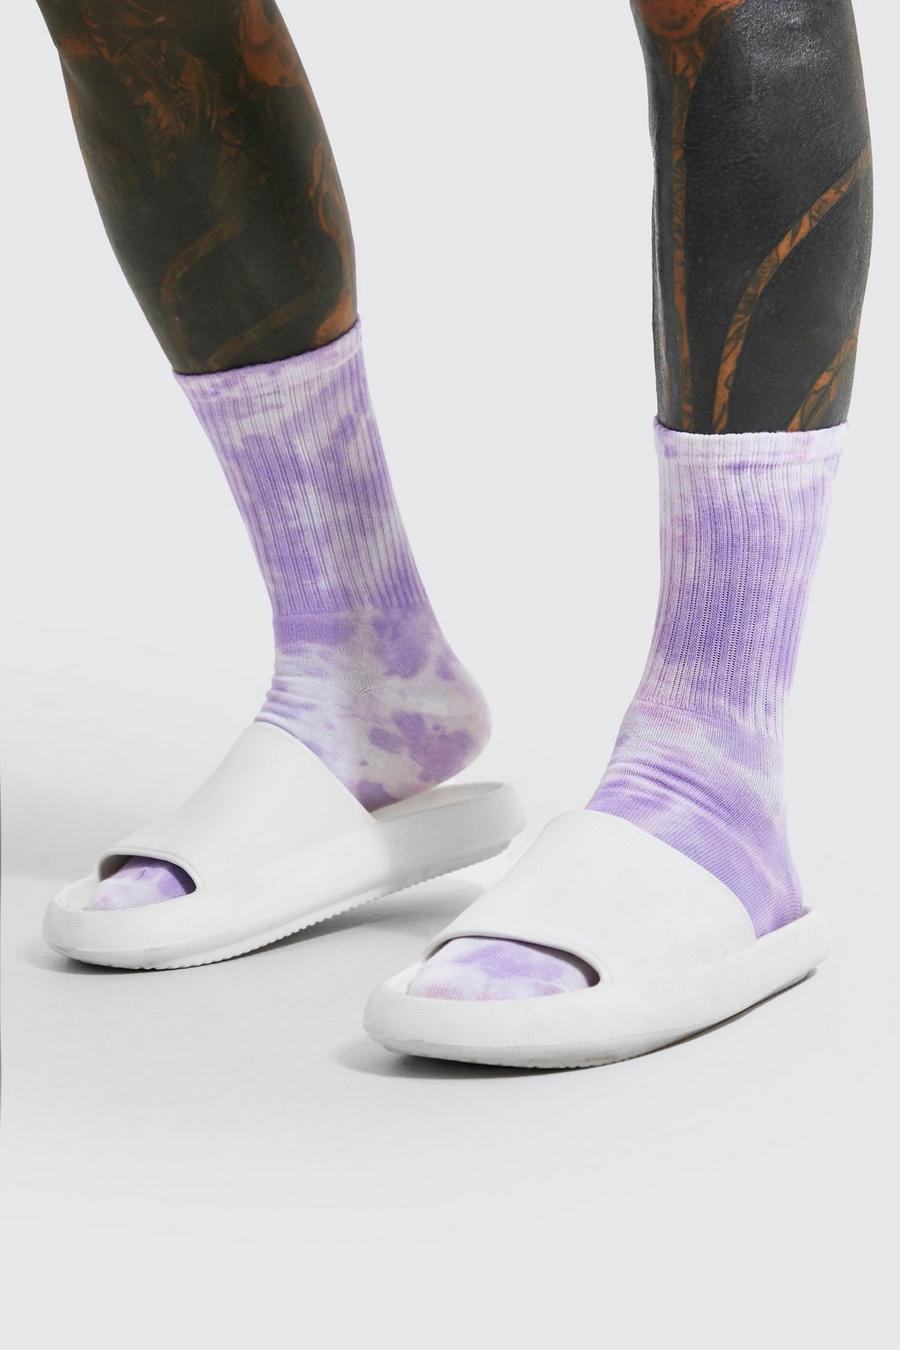 The Tie-Dye Sock Lilac